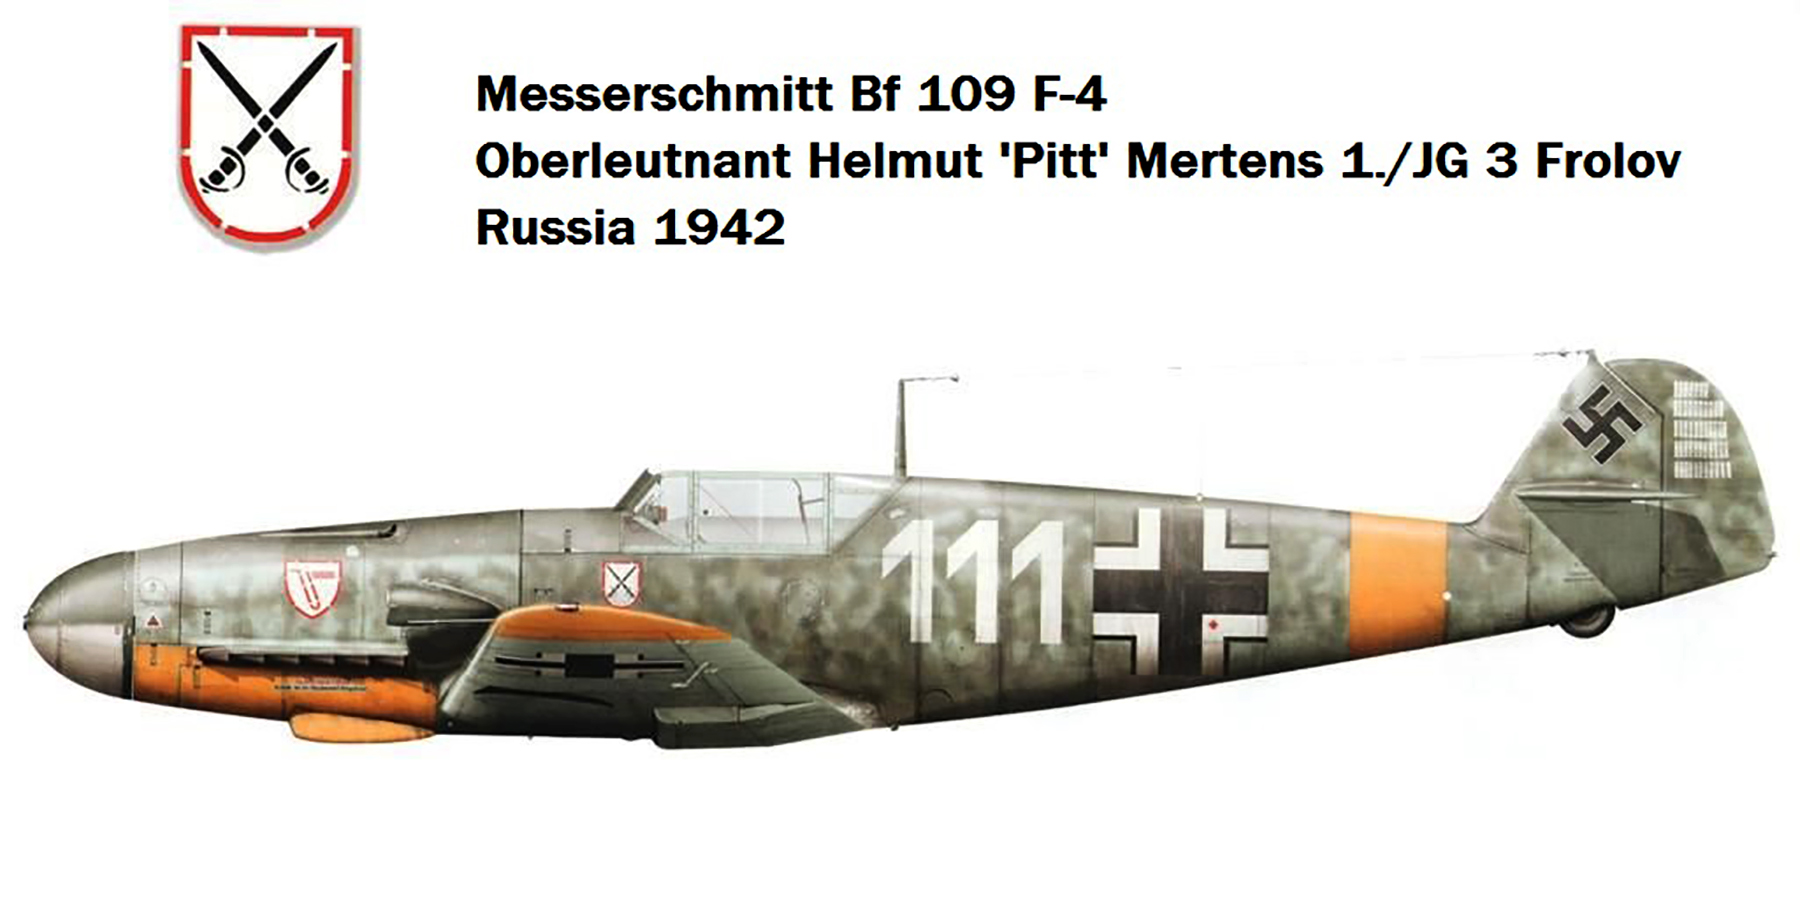 Messerschmitt Bf 109F4 1.JG3 White 111 Helmut Mertens Frolov Russia 1942 by Claes Sundin 0A